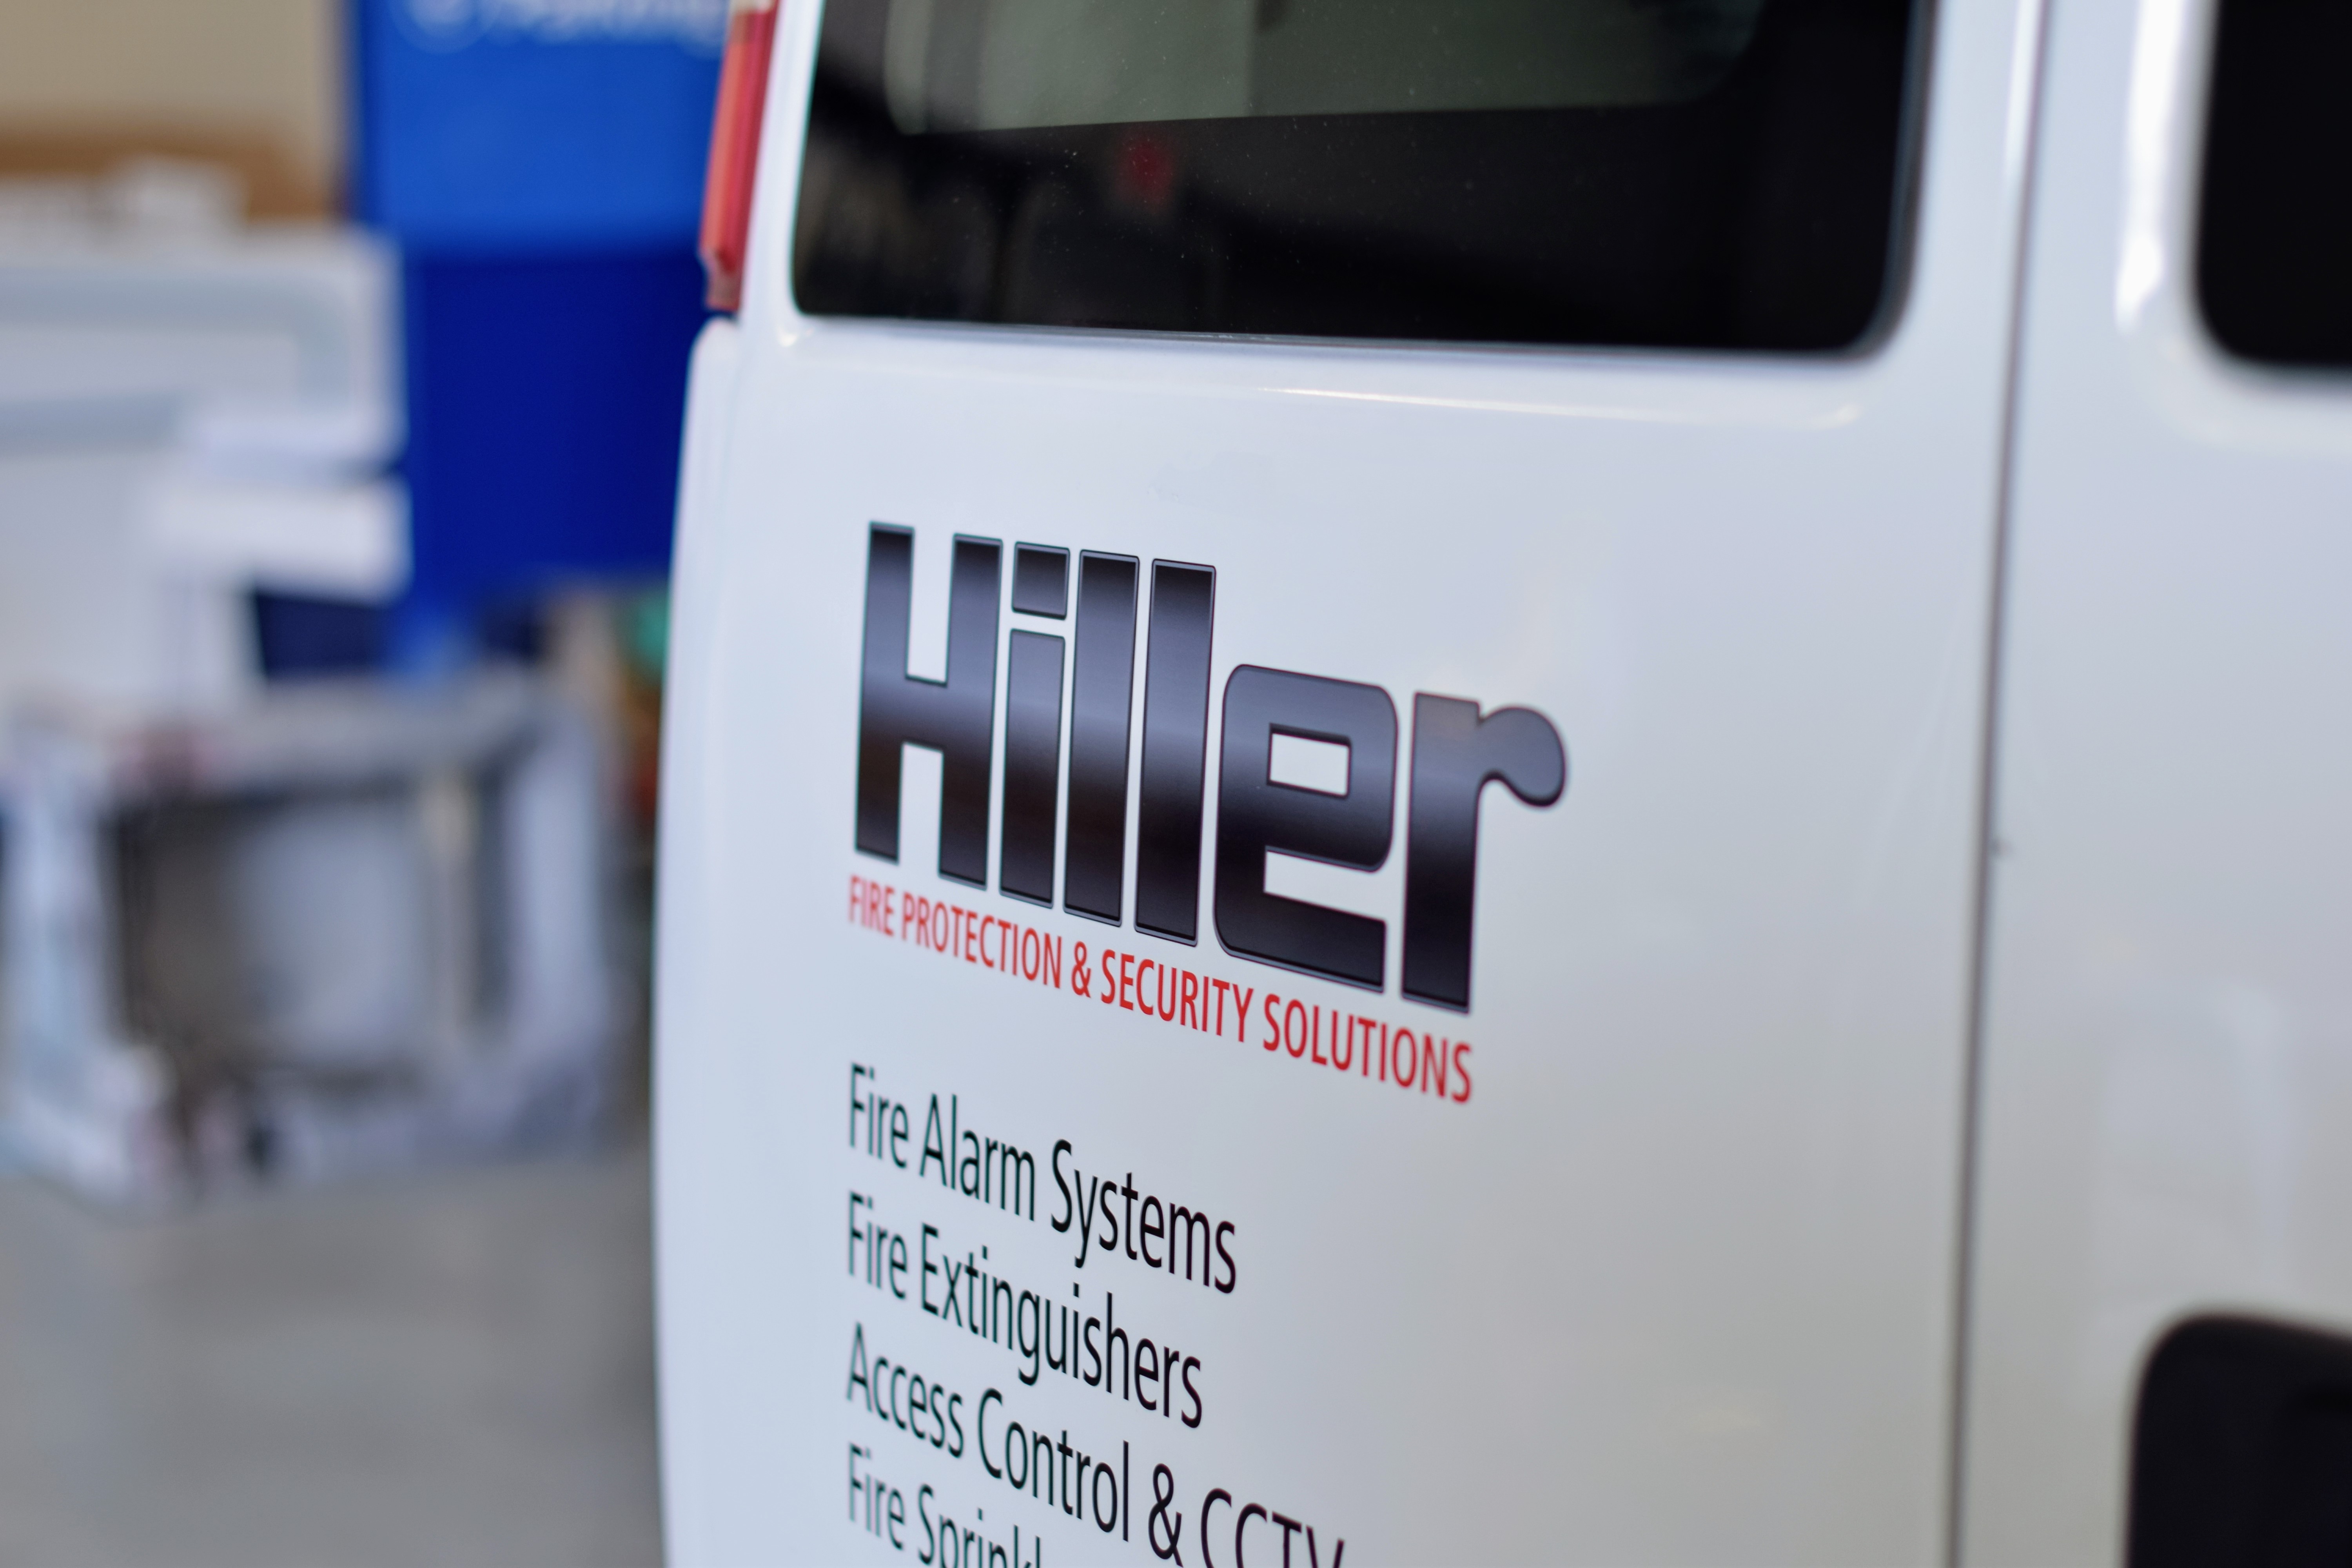 Fleet wraps on new Hiller vans - signgeek